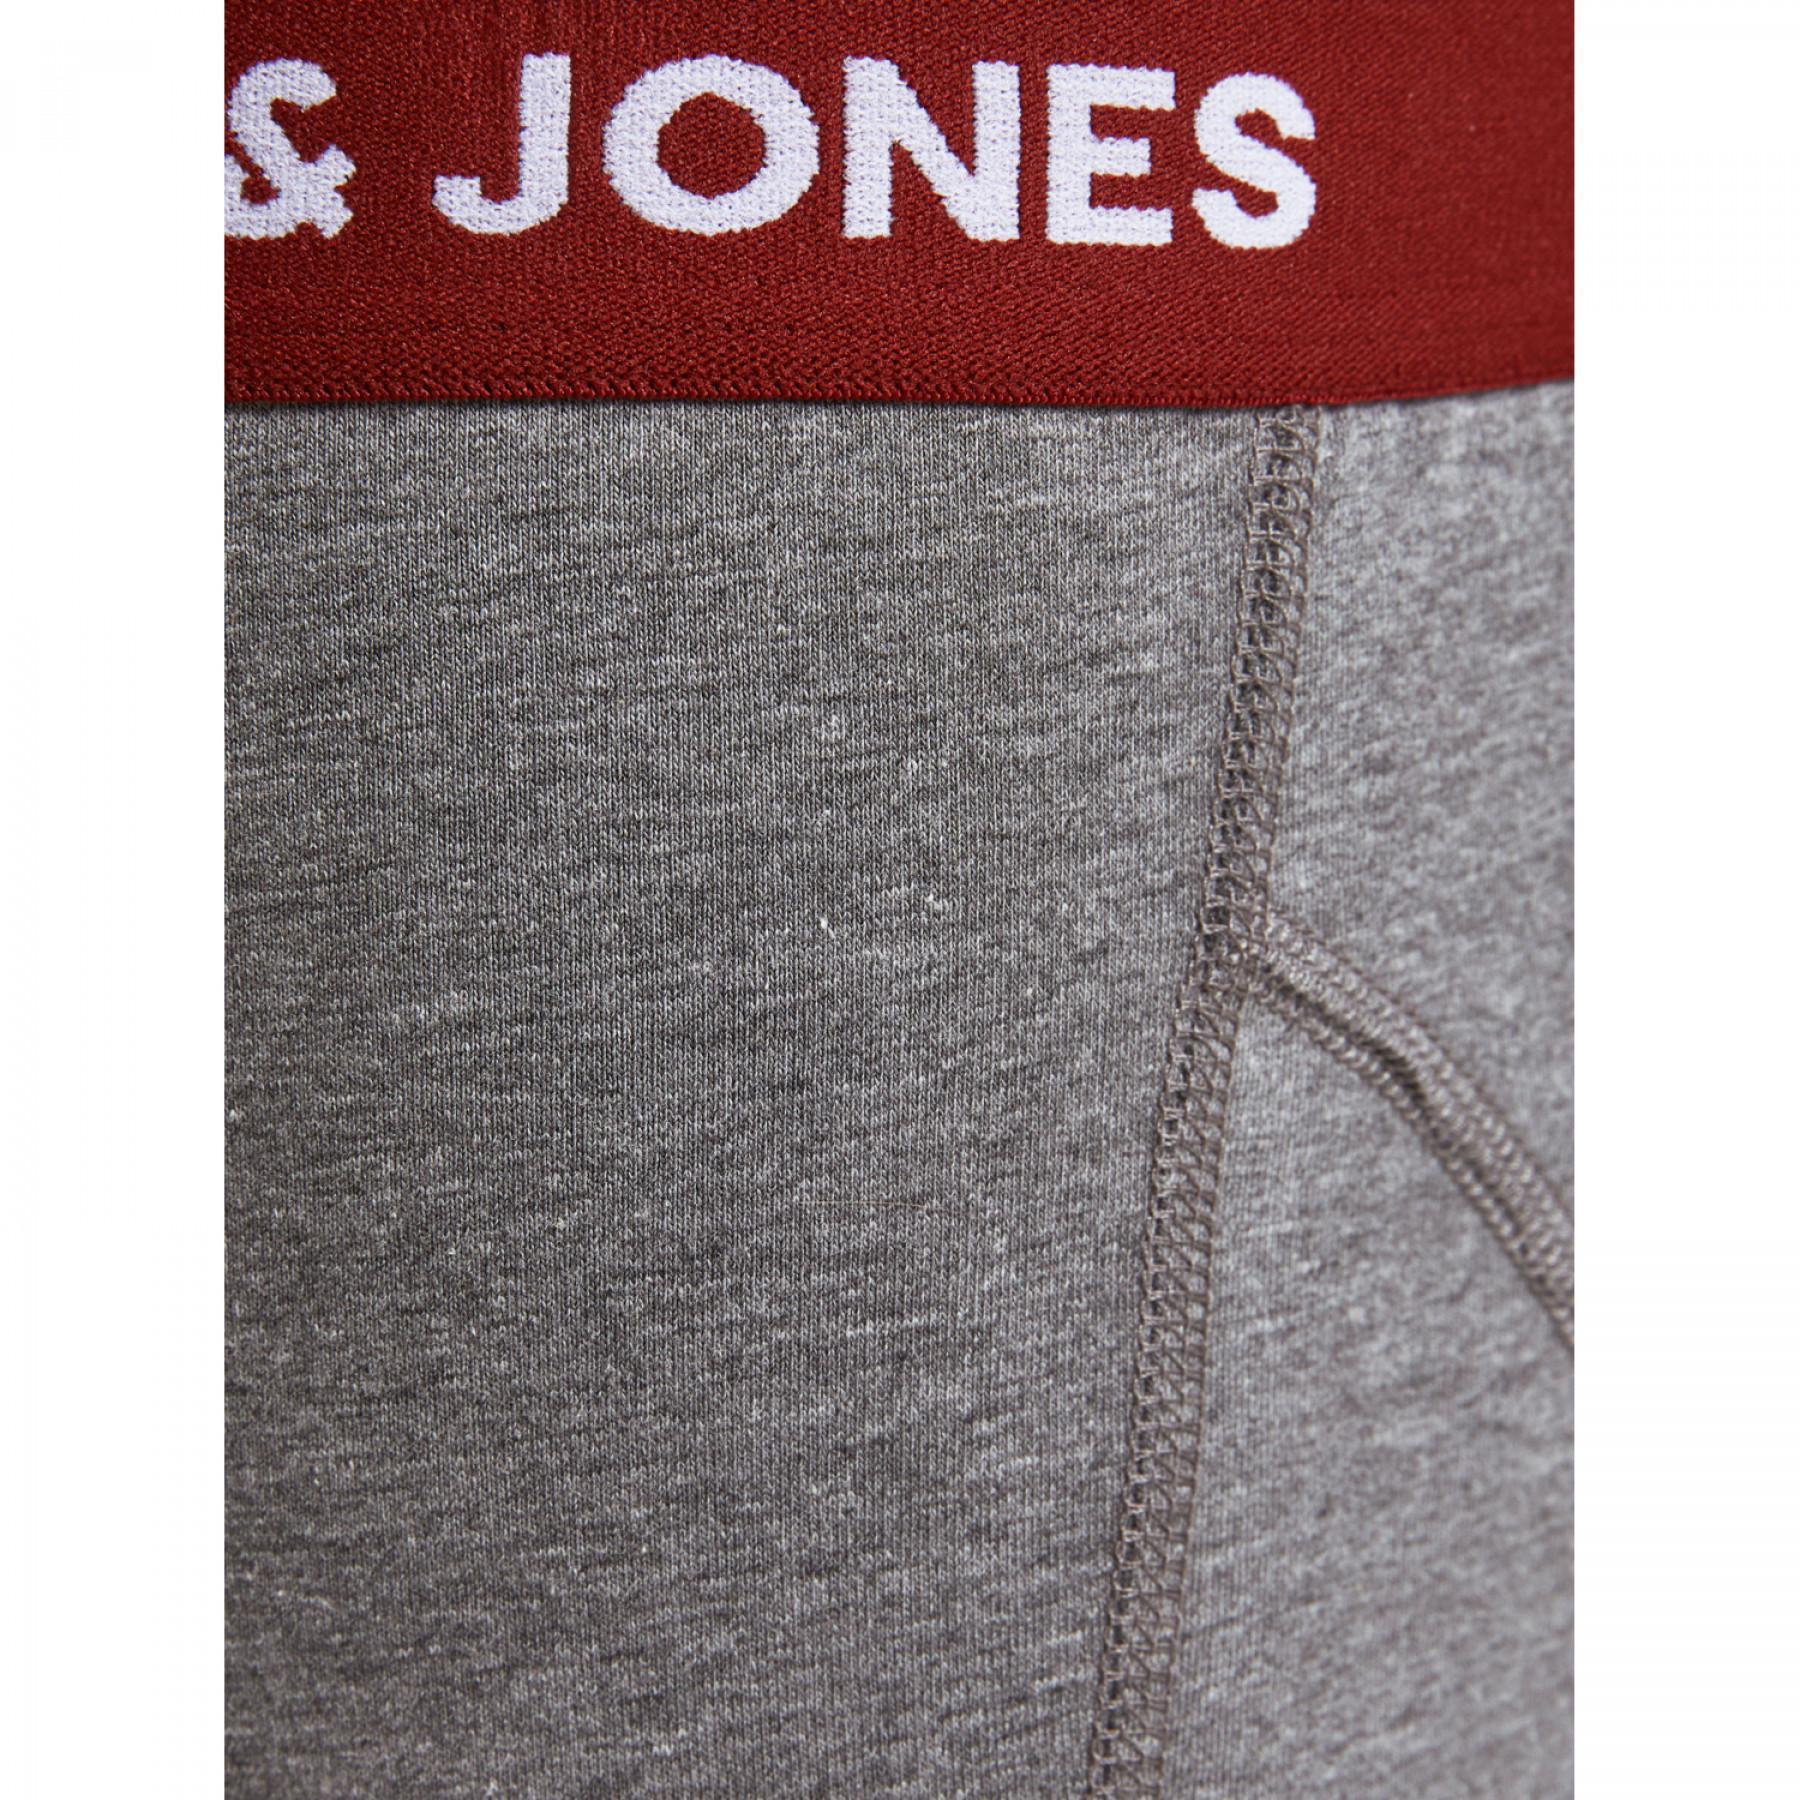 Set of 5 boxer shorts Jack & Jones Jacbayer